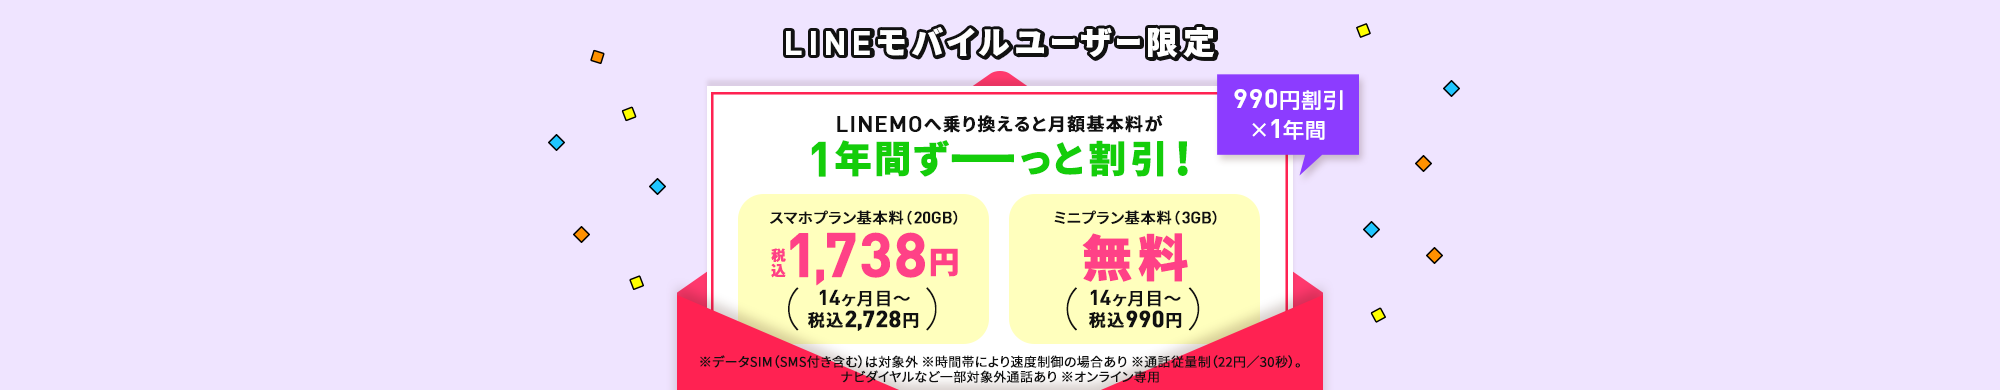 キャンペーン期間中に、LINEモバイル音声通話SIMをご利用の方が、LINEMOに乗り換えで契約で、毎月の基本料を最大13カ月間990円割り引きします。